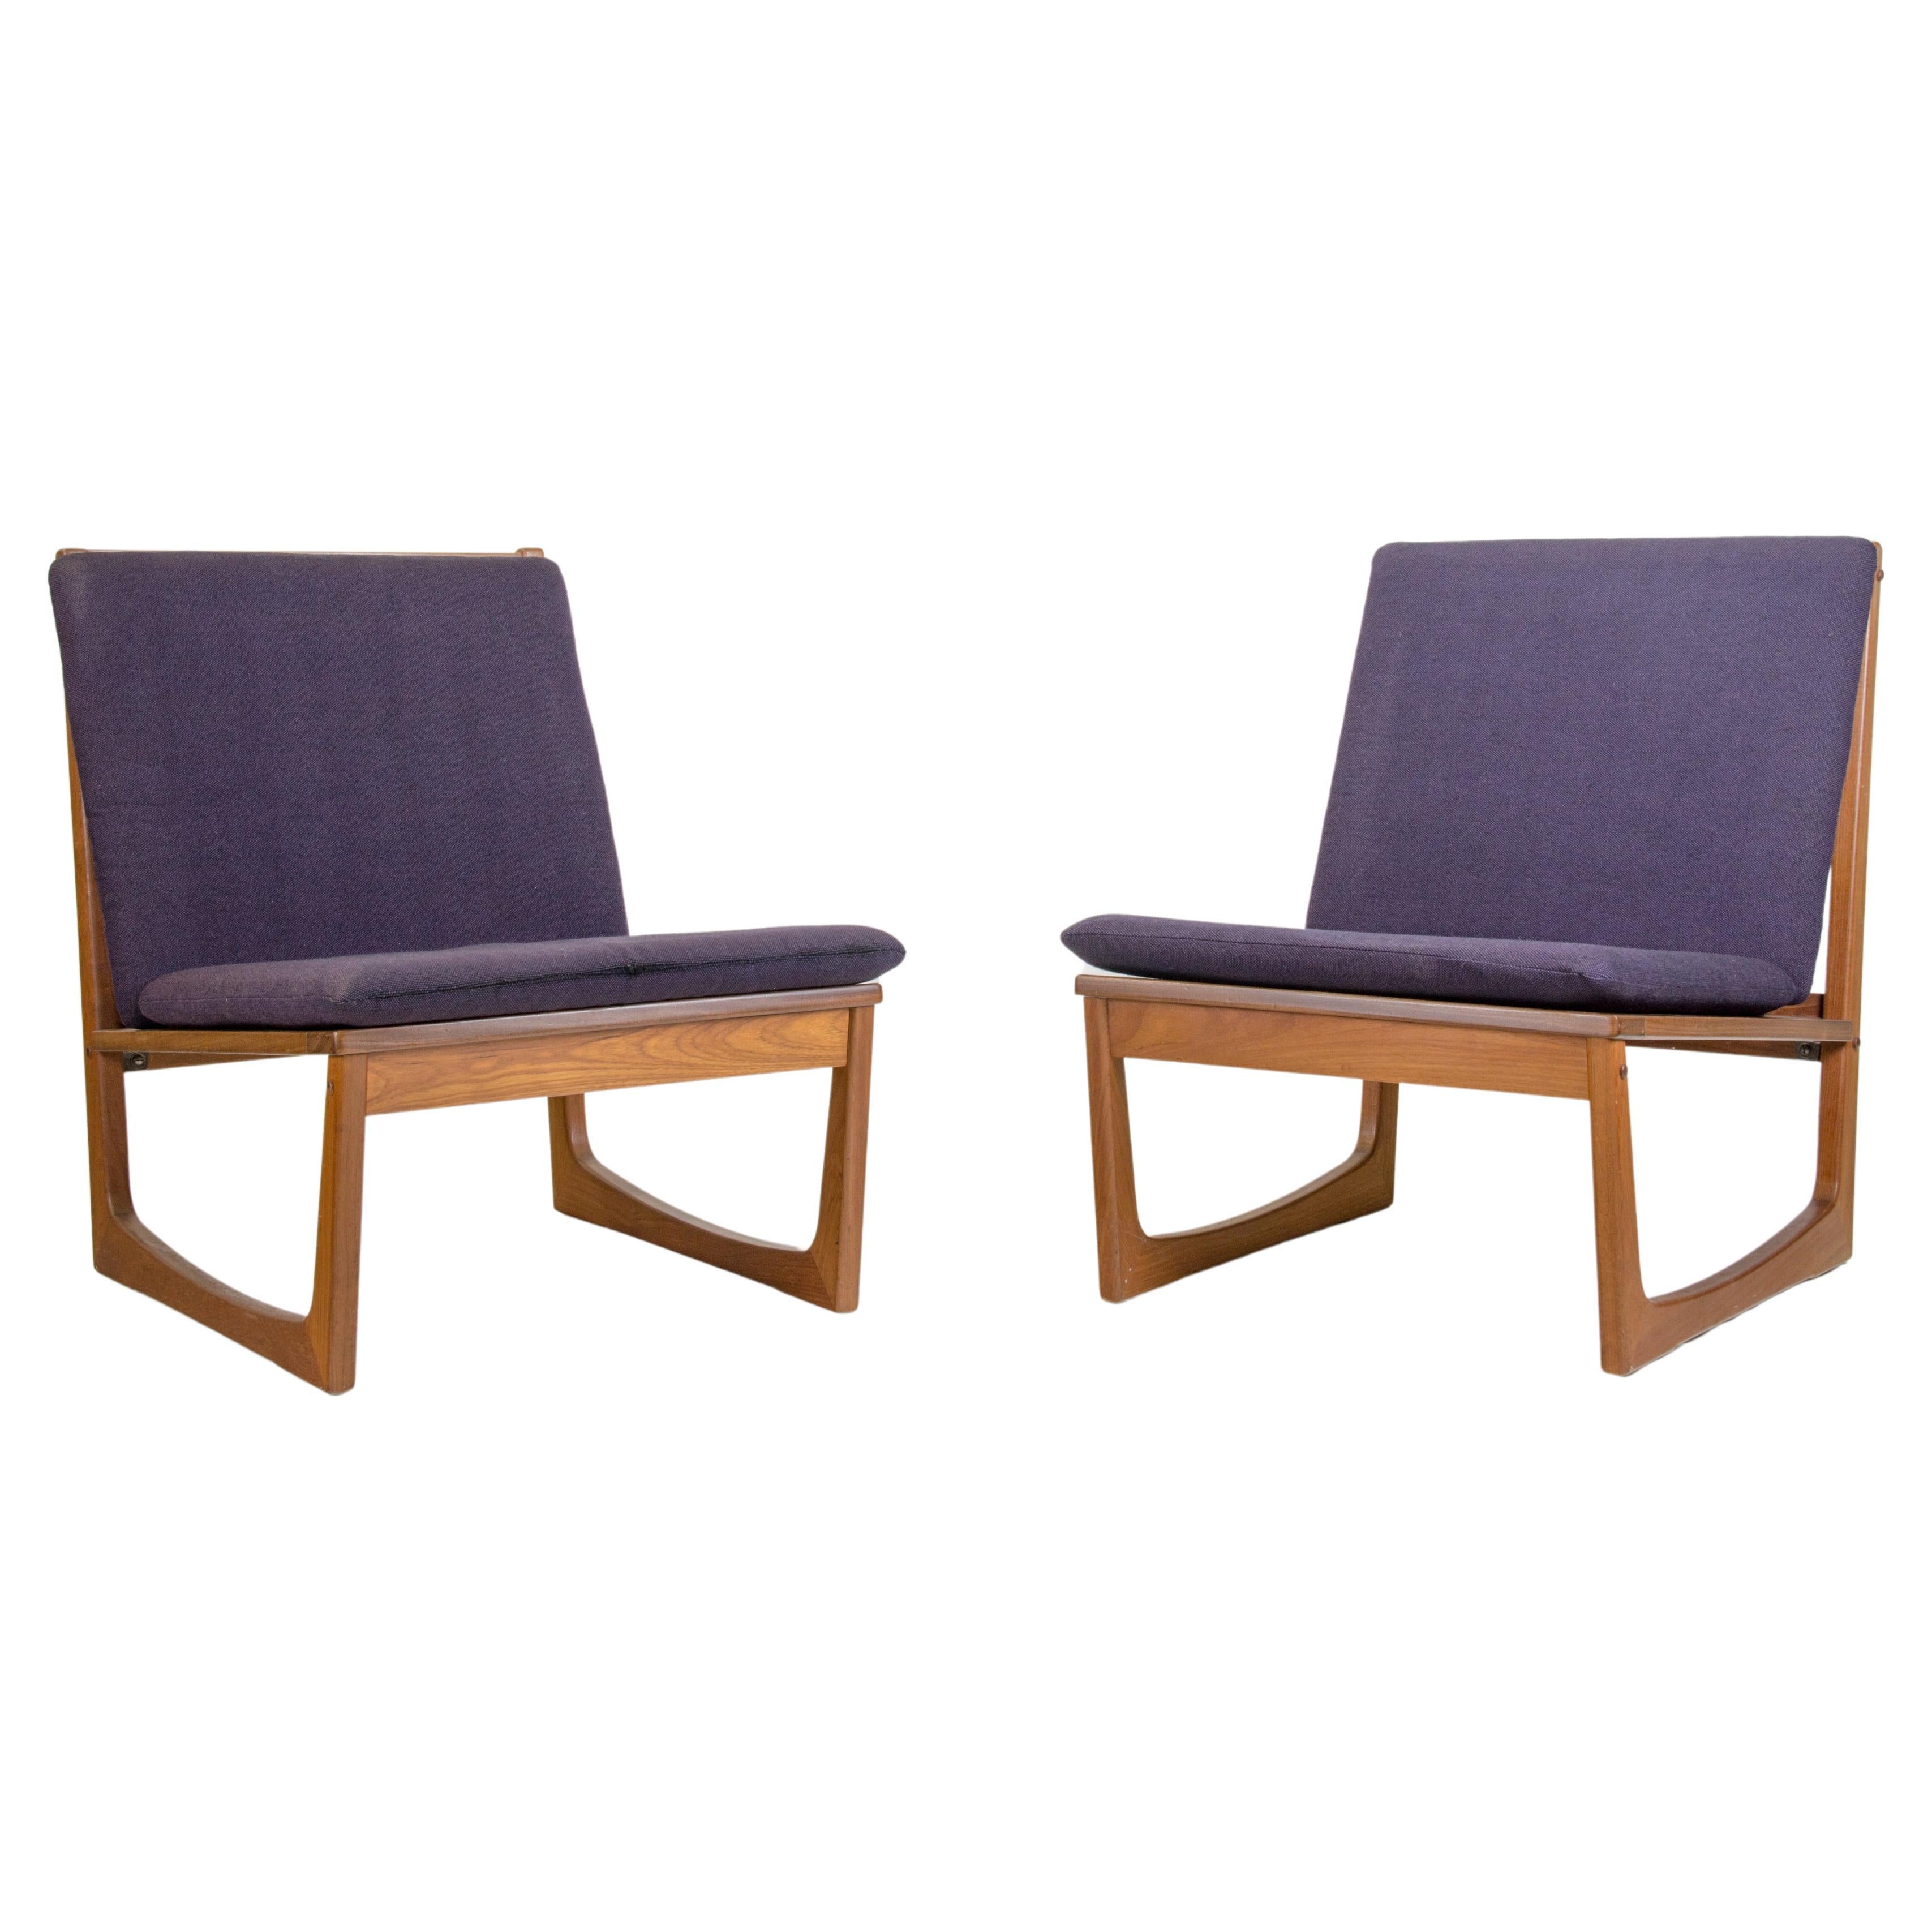 Model 522 Teak Easy Chairs by Hans Olsen for Brdr. Juul Kristensen